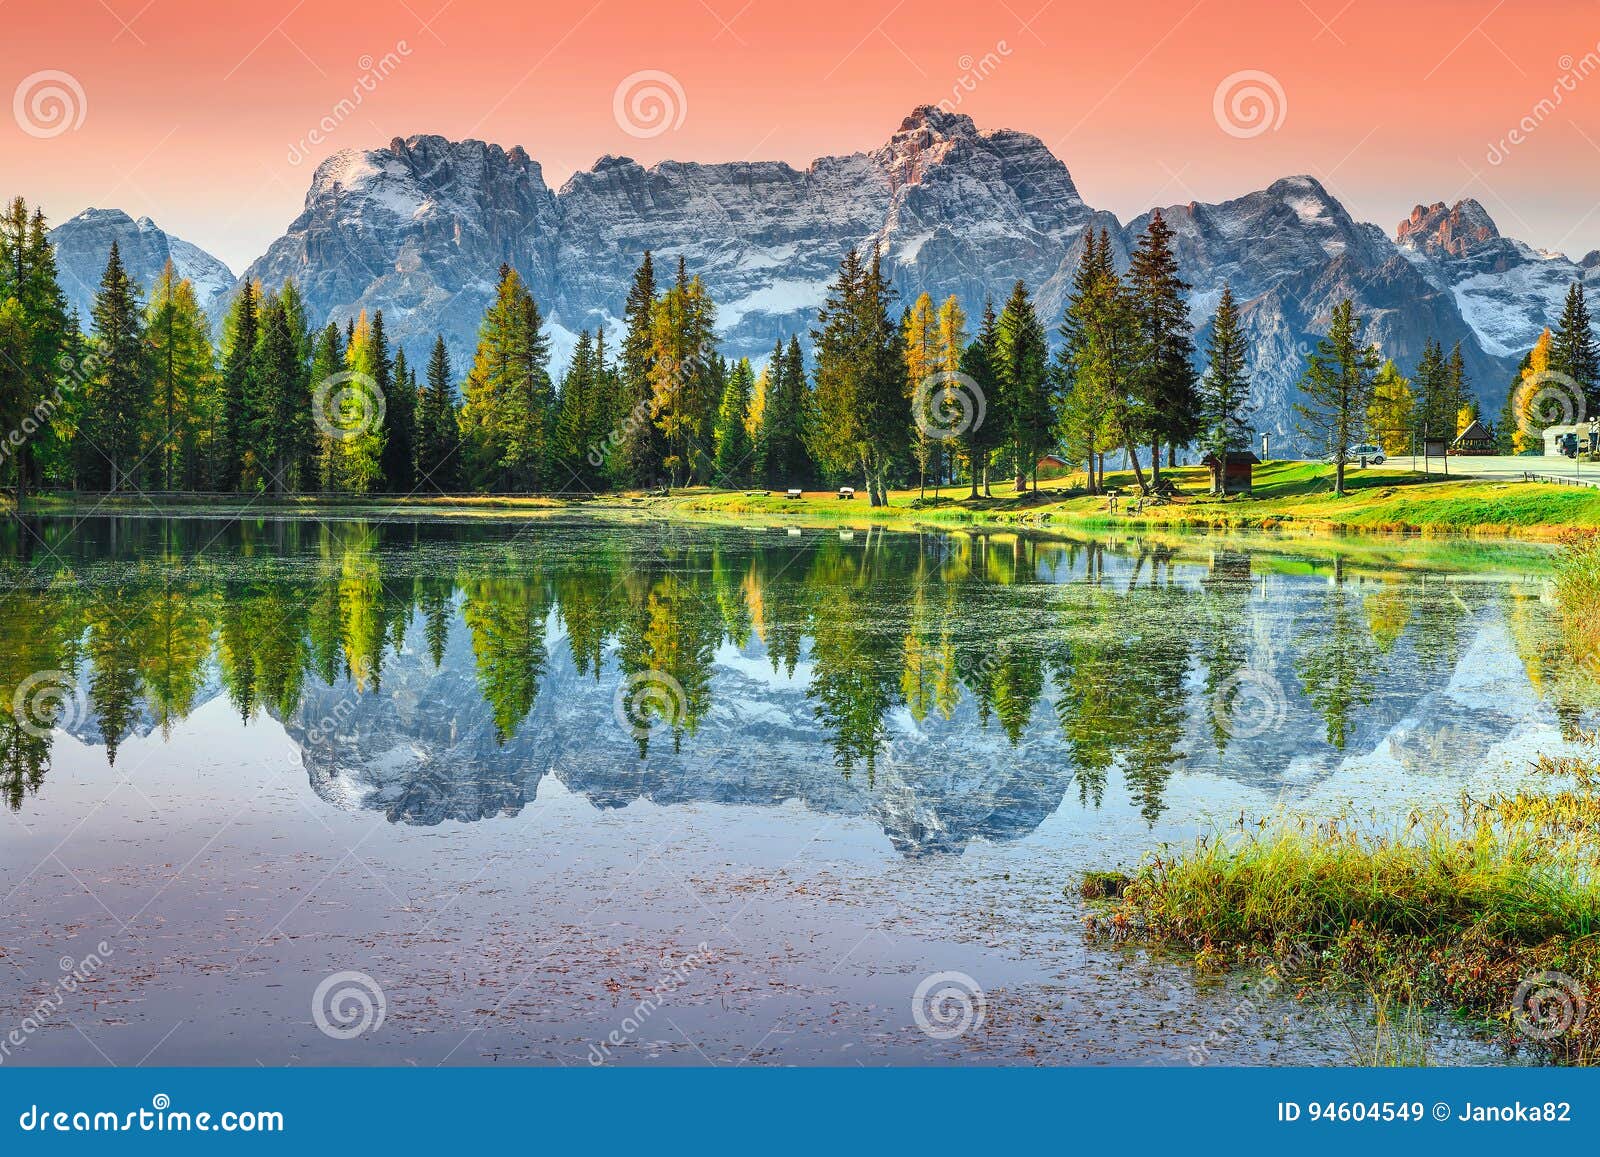 stunning alpine lake in dolomites mountains, antorno lake, italy, europe